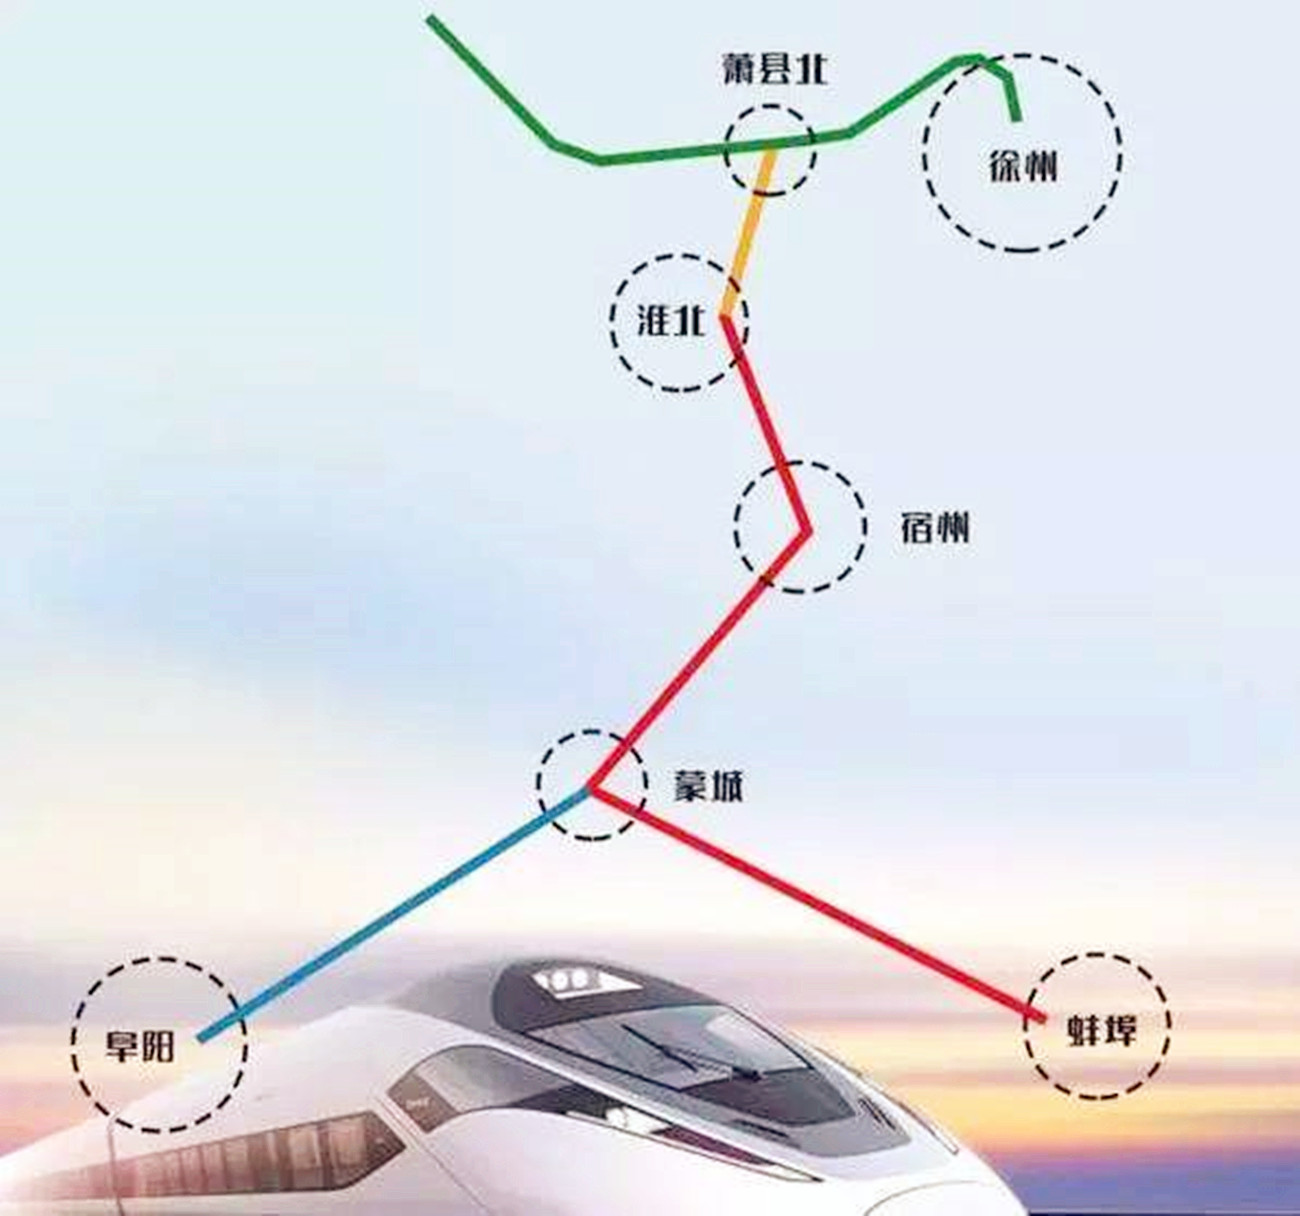 这条高速铁路就是淮宿阜城际铁路,即淮北至宿州至阜阳城际铁路,目前